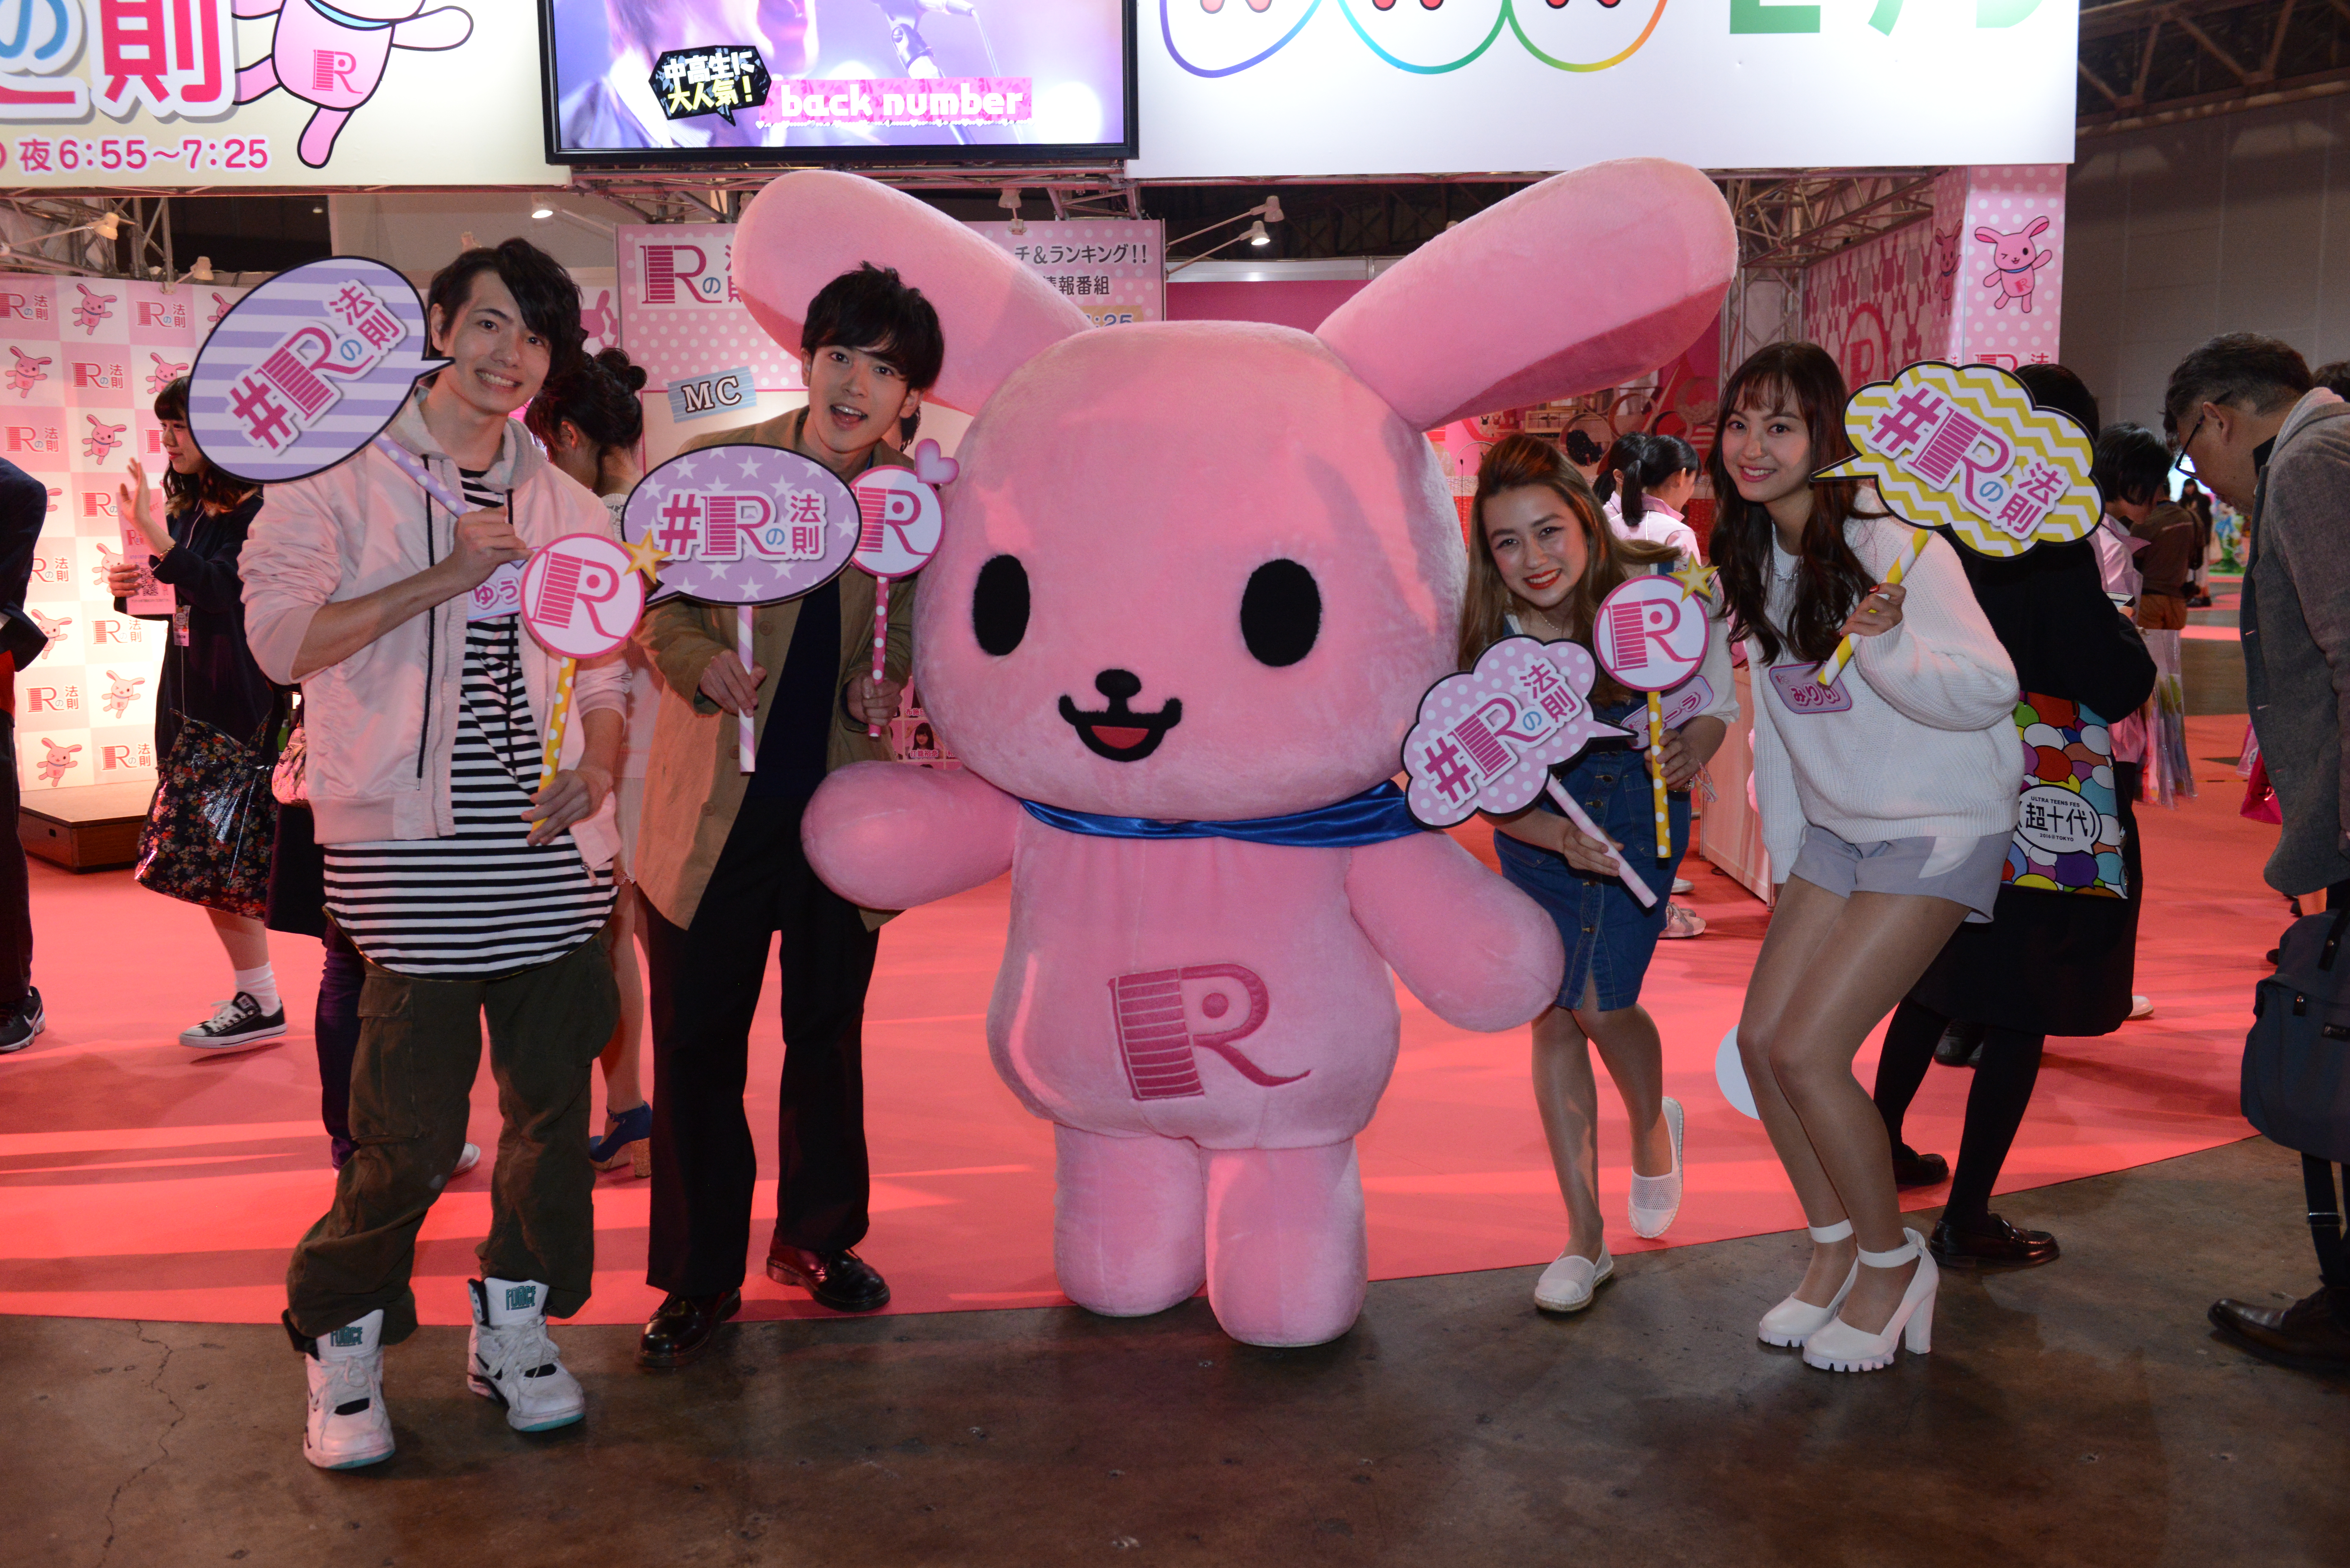 PicsArt at Ultra Teens Fest 2016 in Tokyo